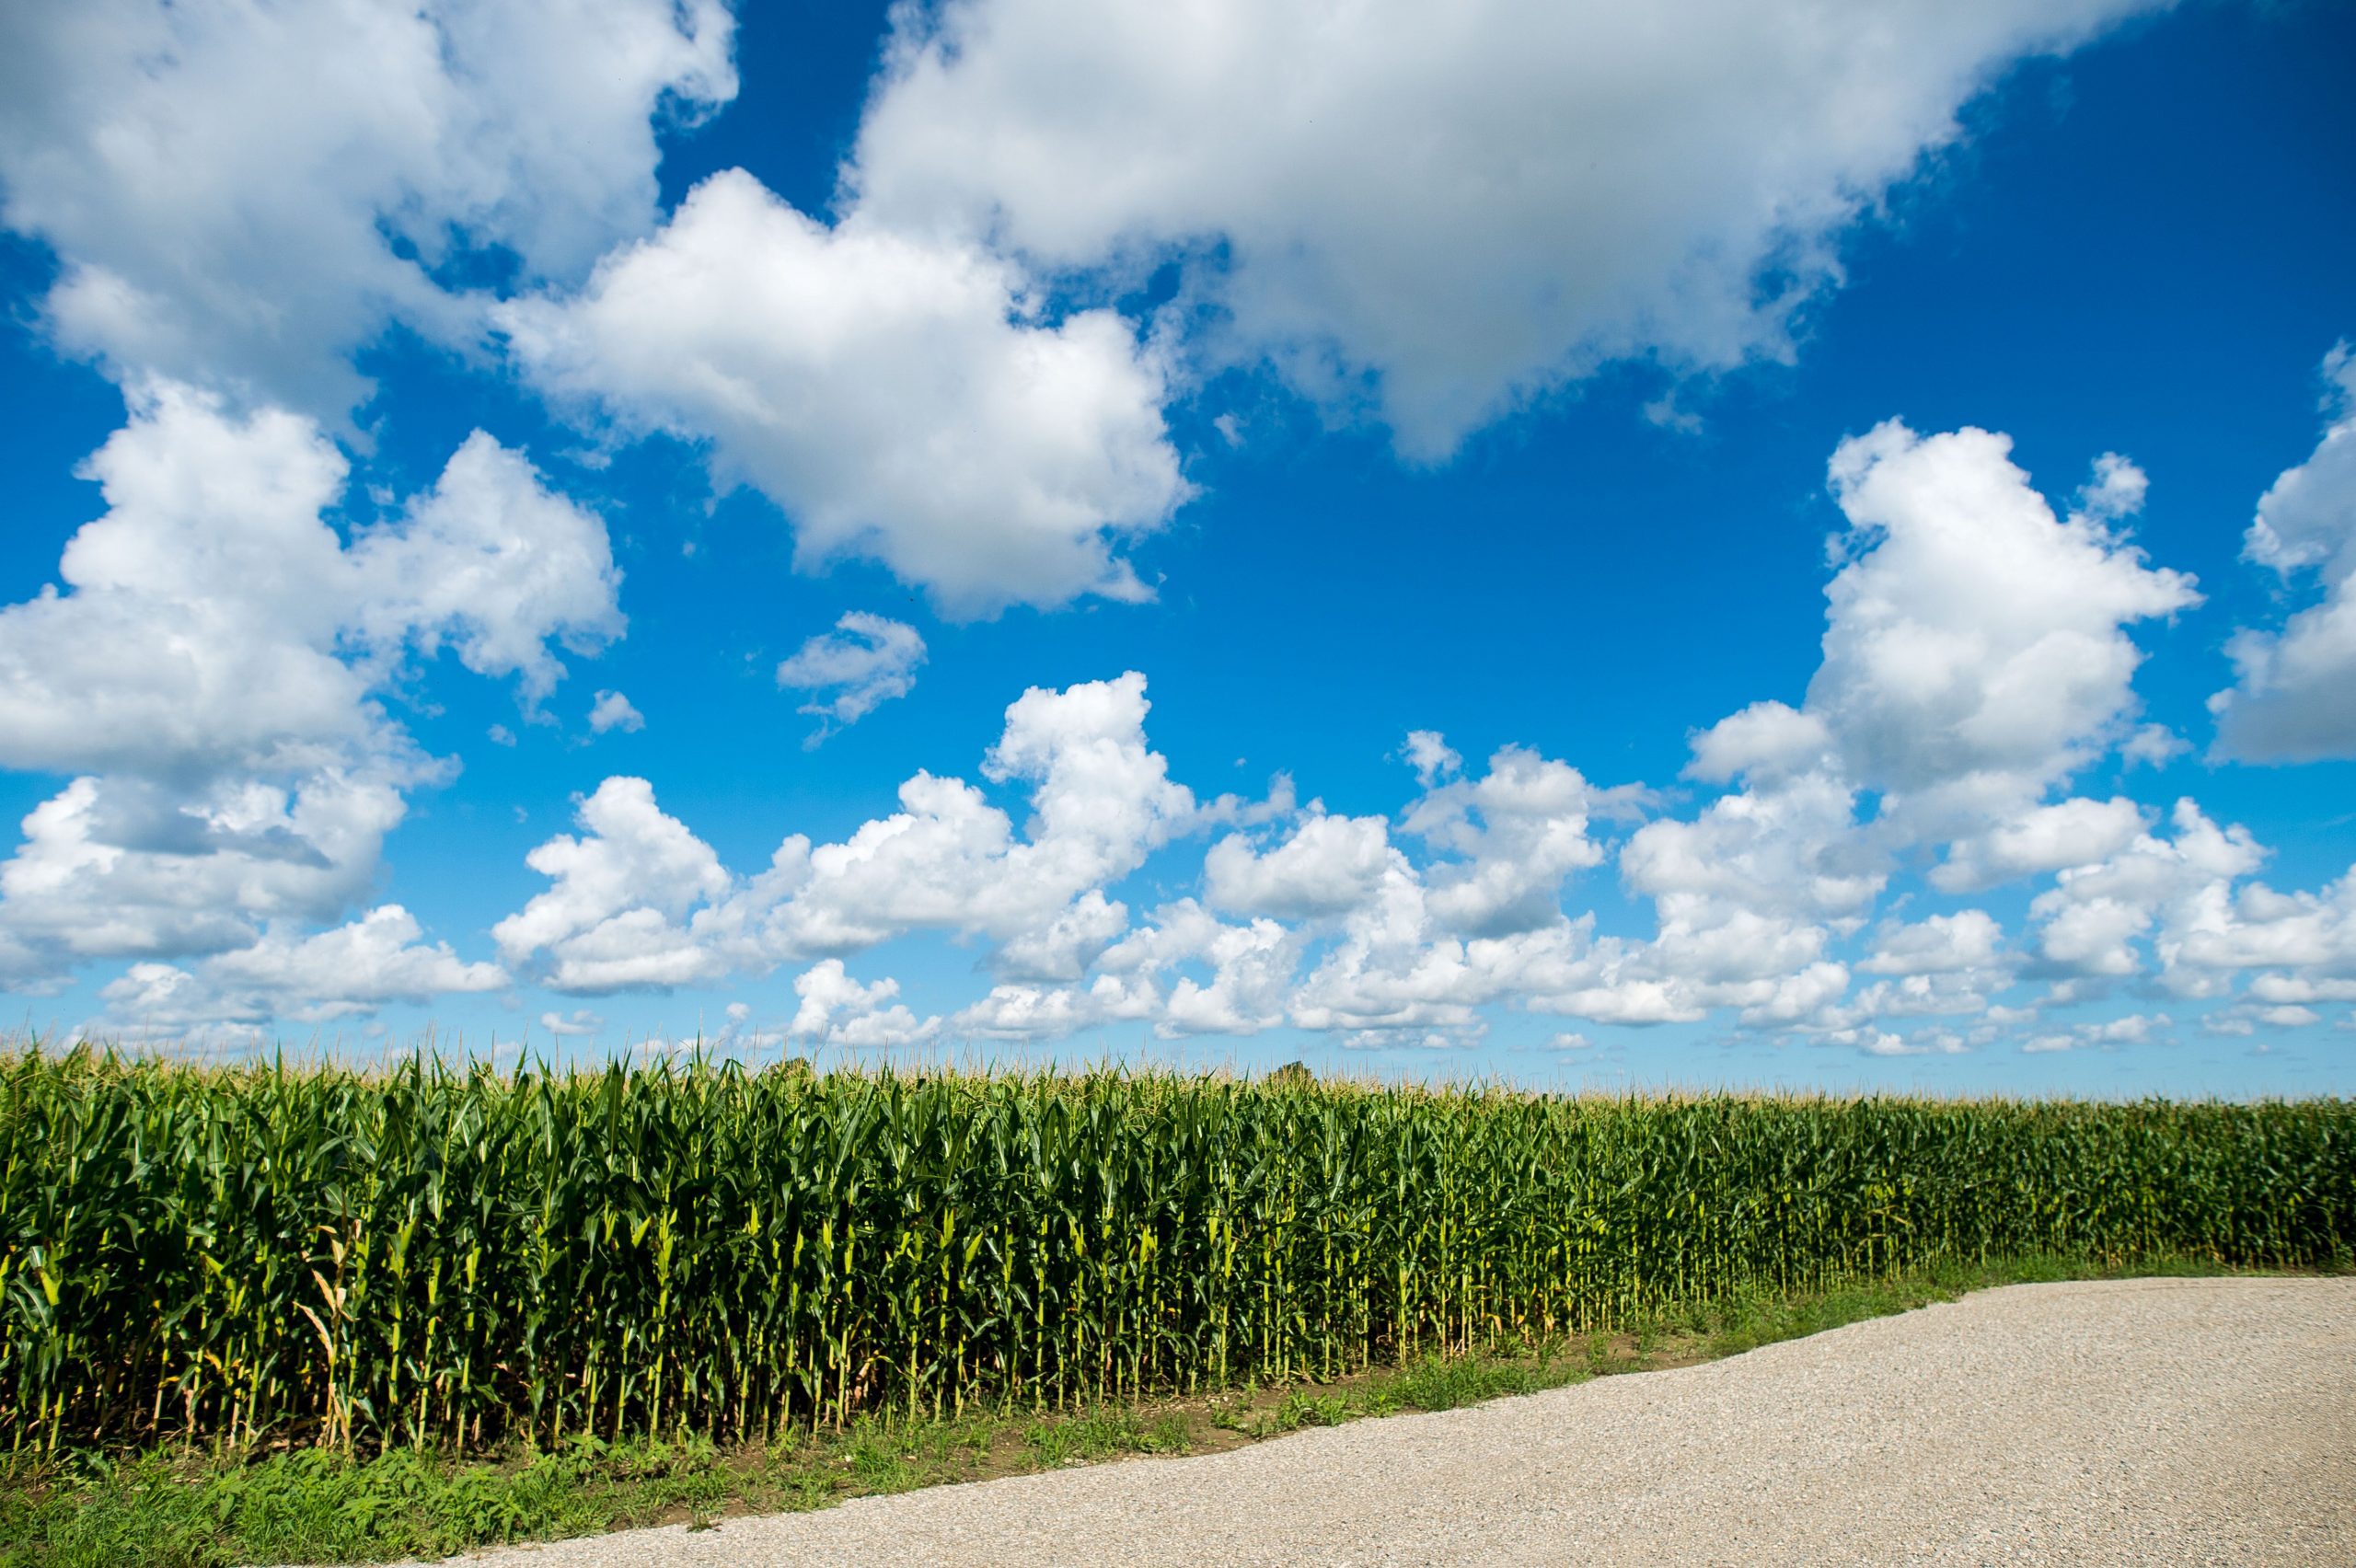 Corn fields in Dufferin County.